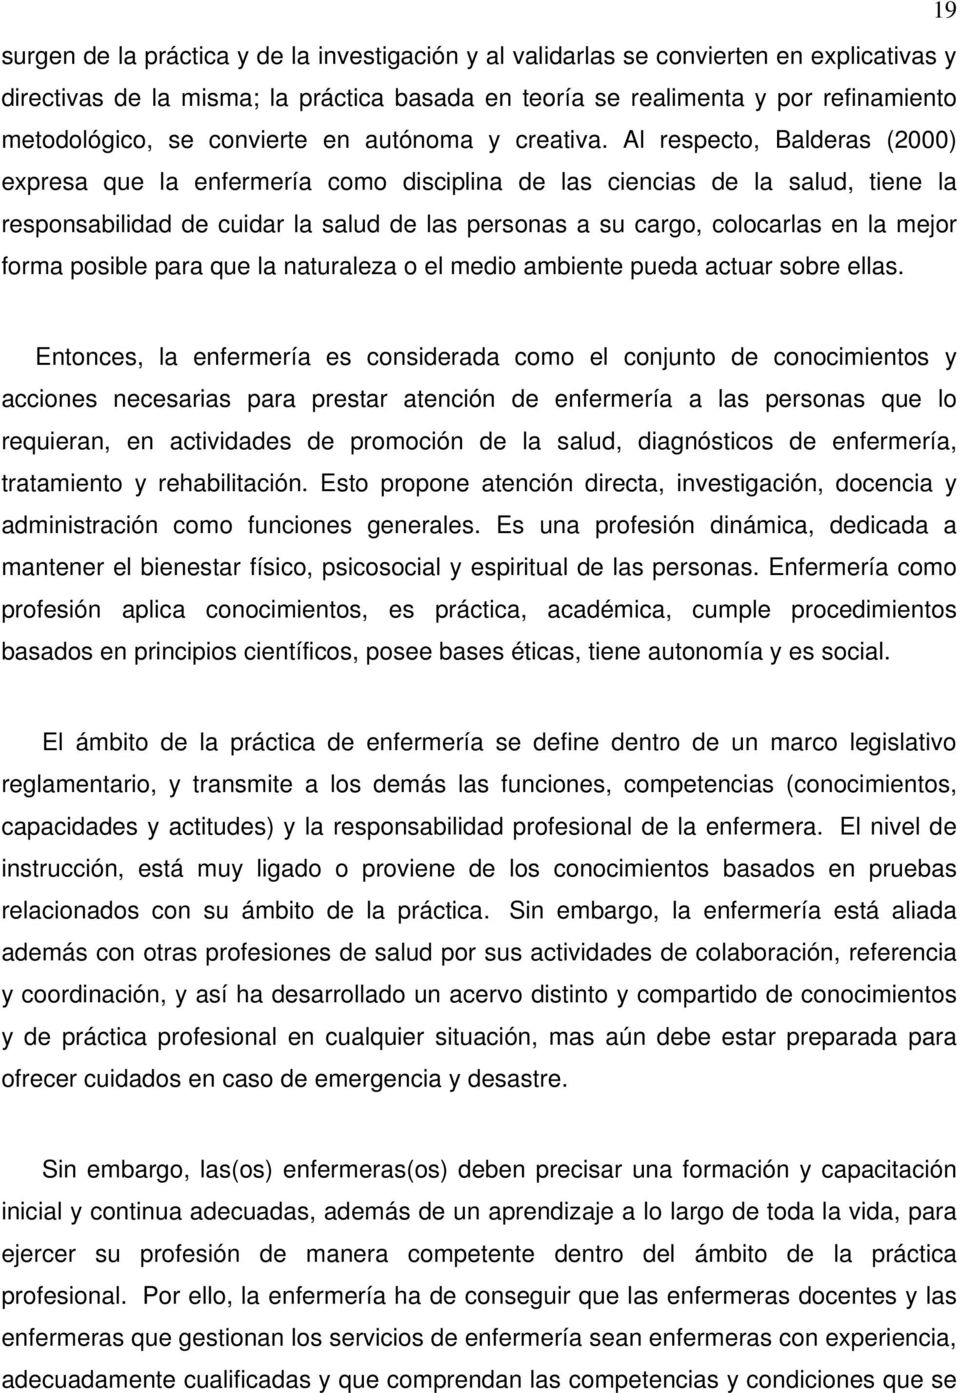 Al respecto, Balderas (2000) expresa que la enfermería como disciplina de las ciencias de la salud, tiene la responsabilidad de cuidar la salud de las personas a su cargo, colocarlas en la mejor